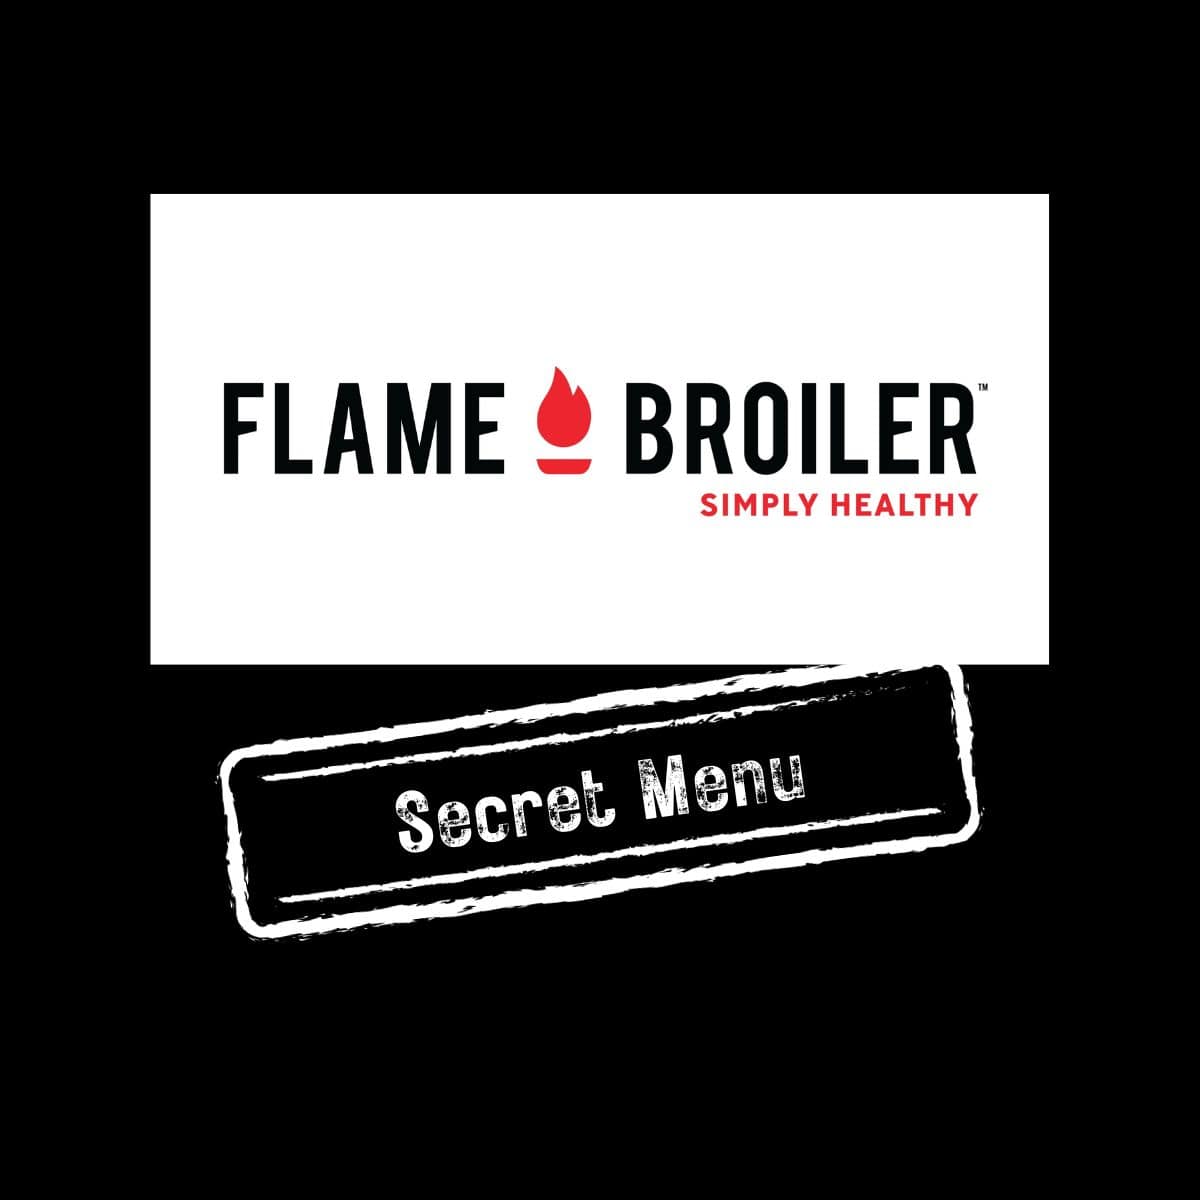 Flame Broiler Secret Menu